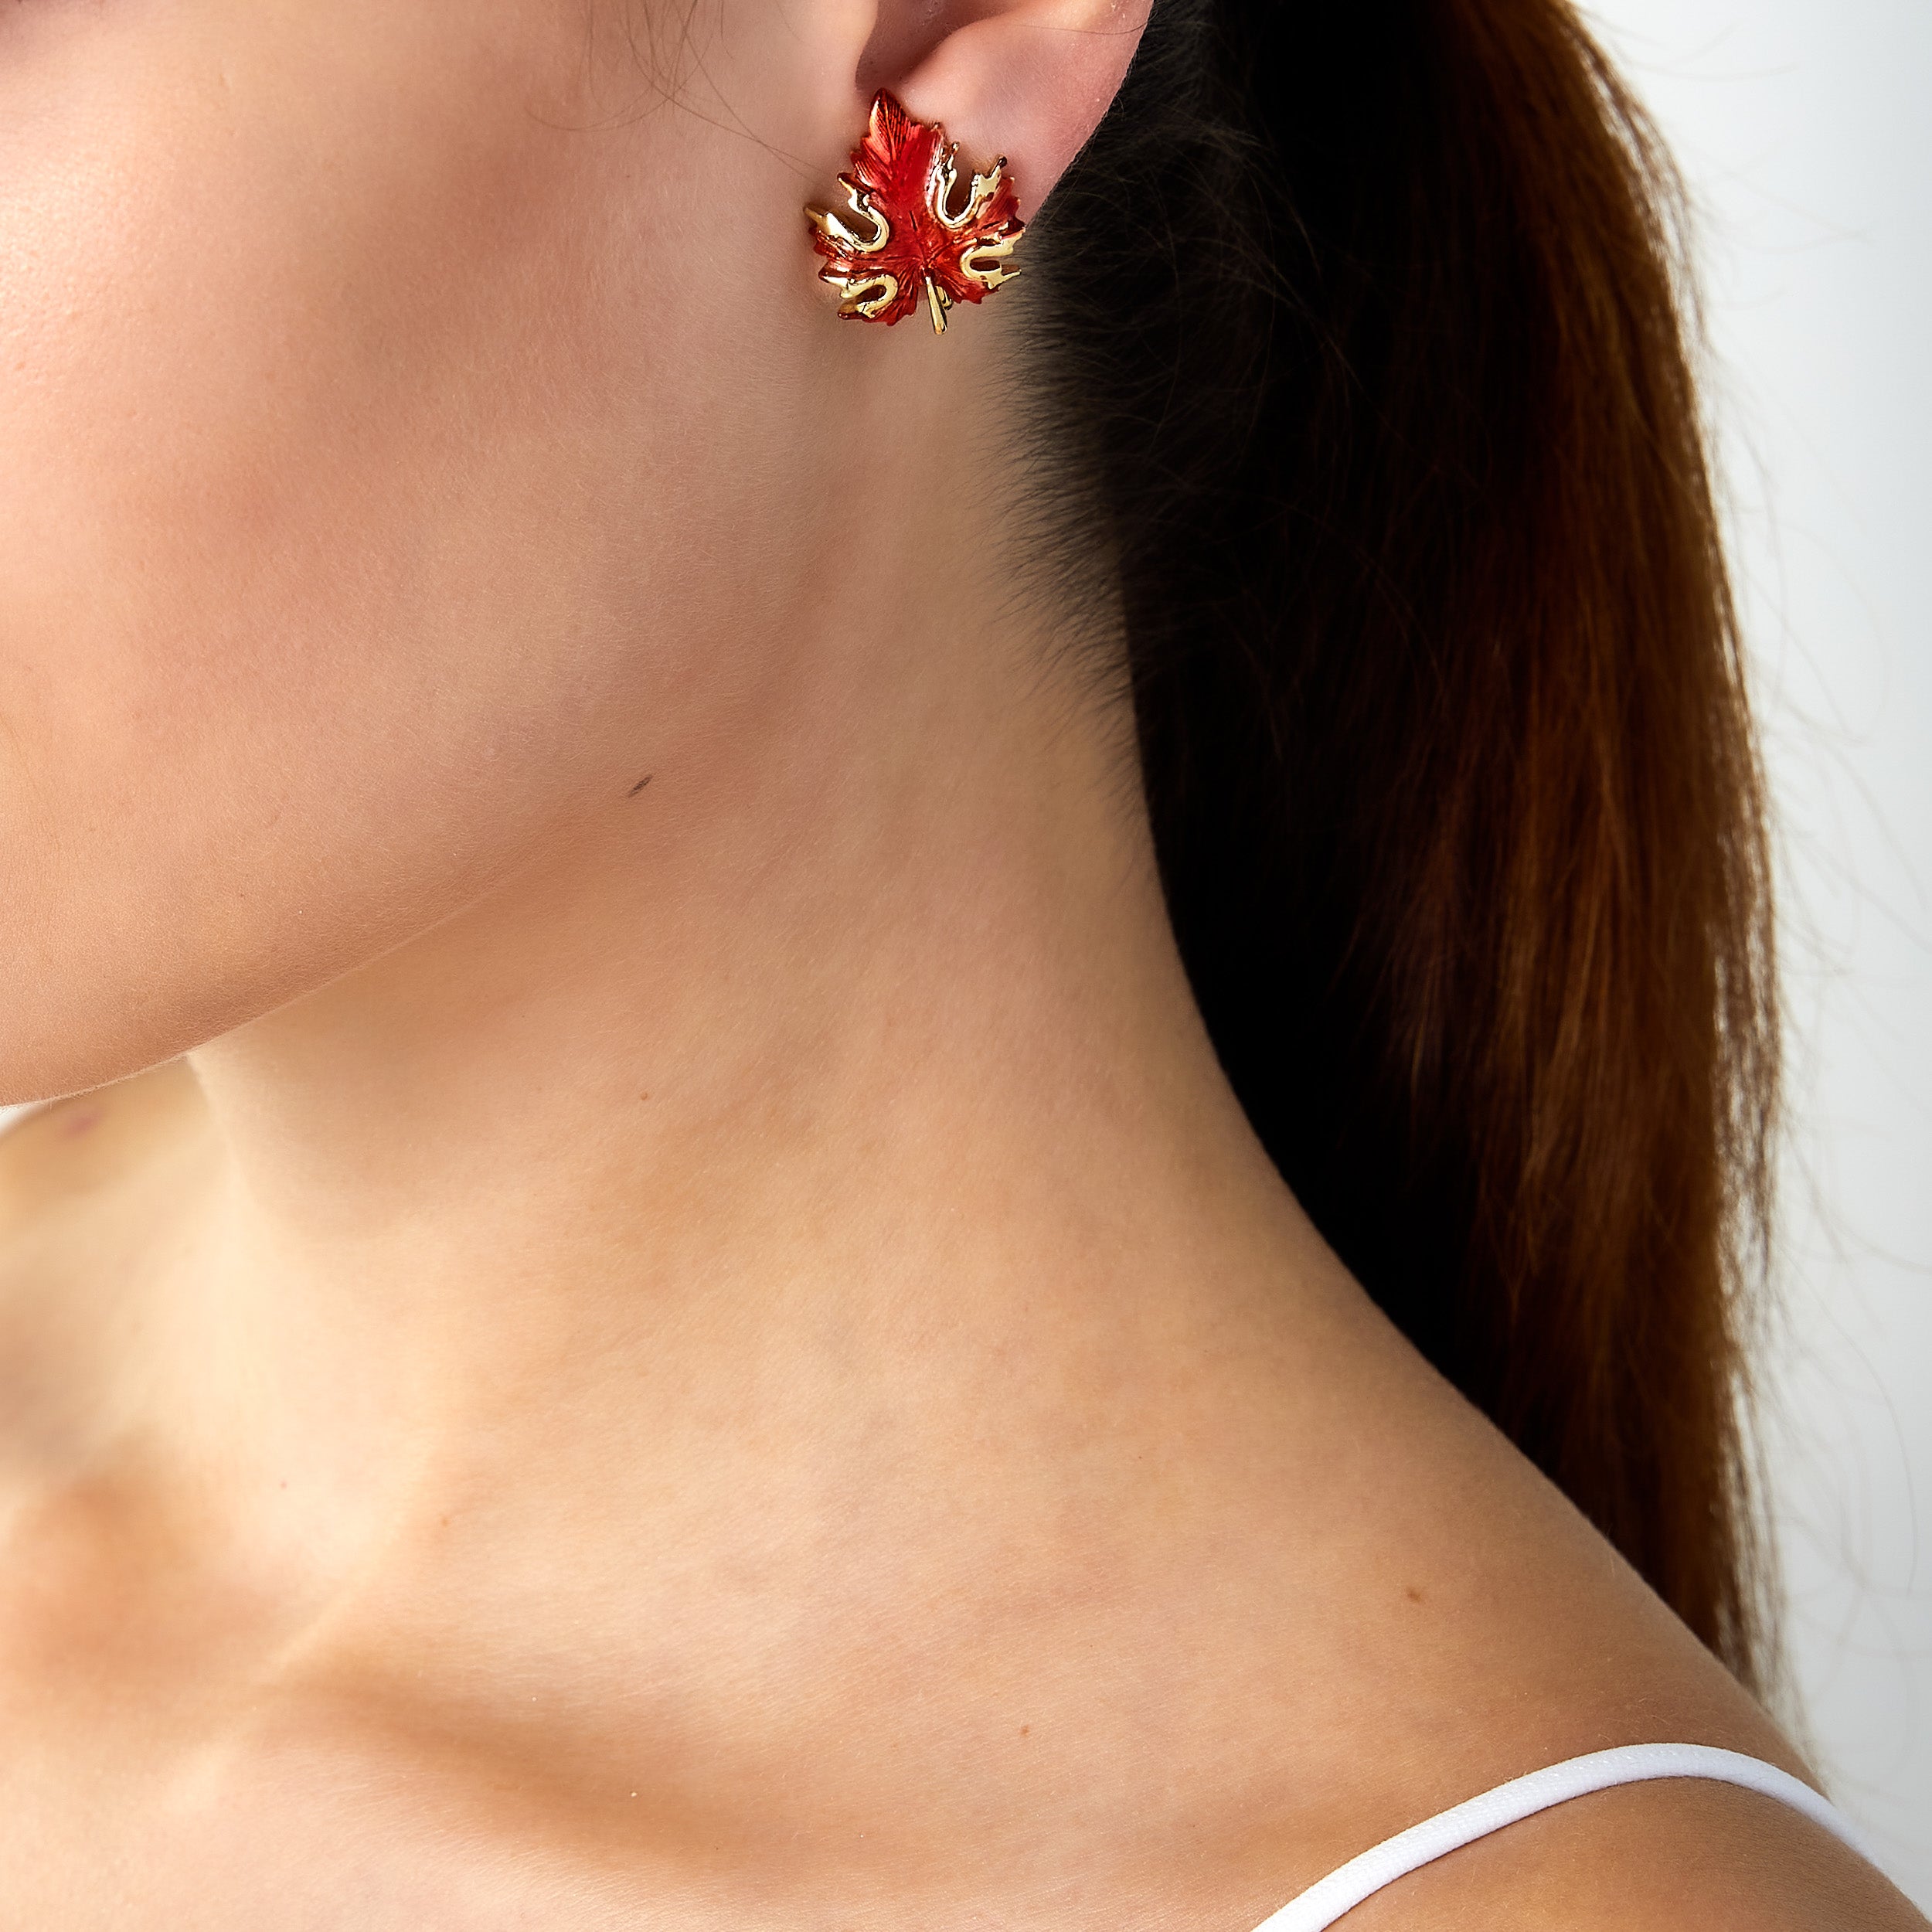 Vintage maple leaf clip earrings worn on woman’s ear